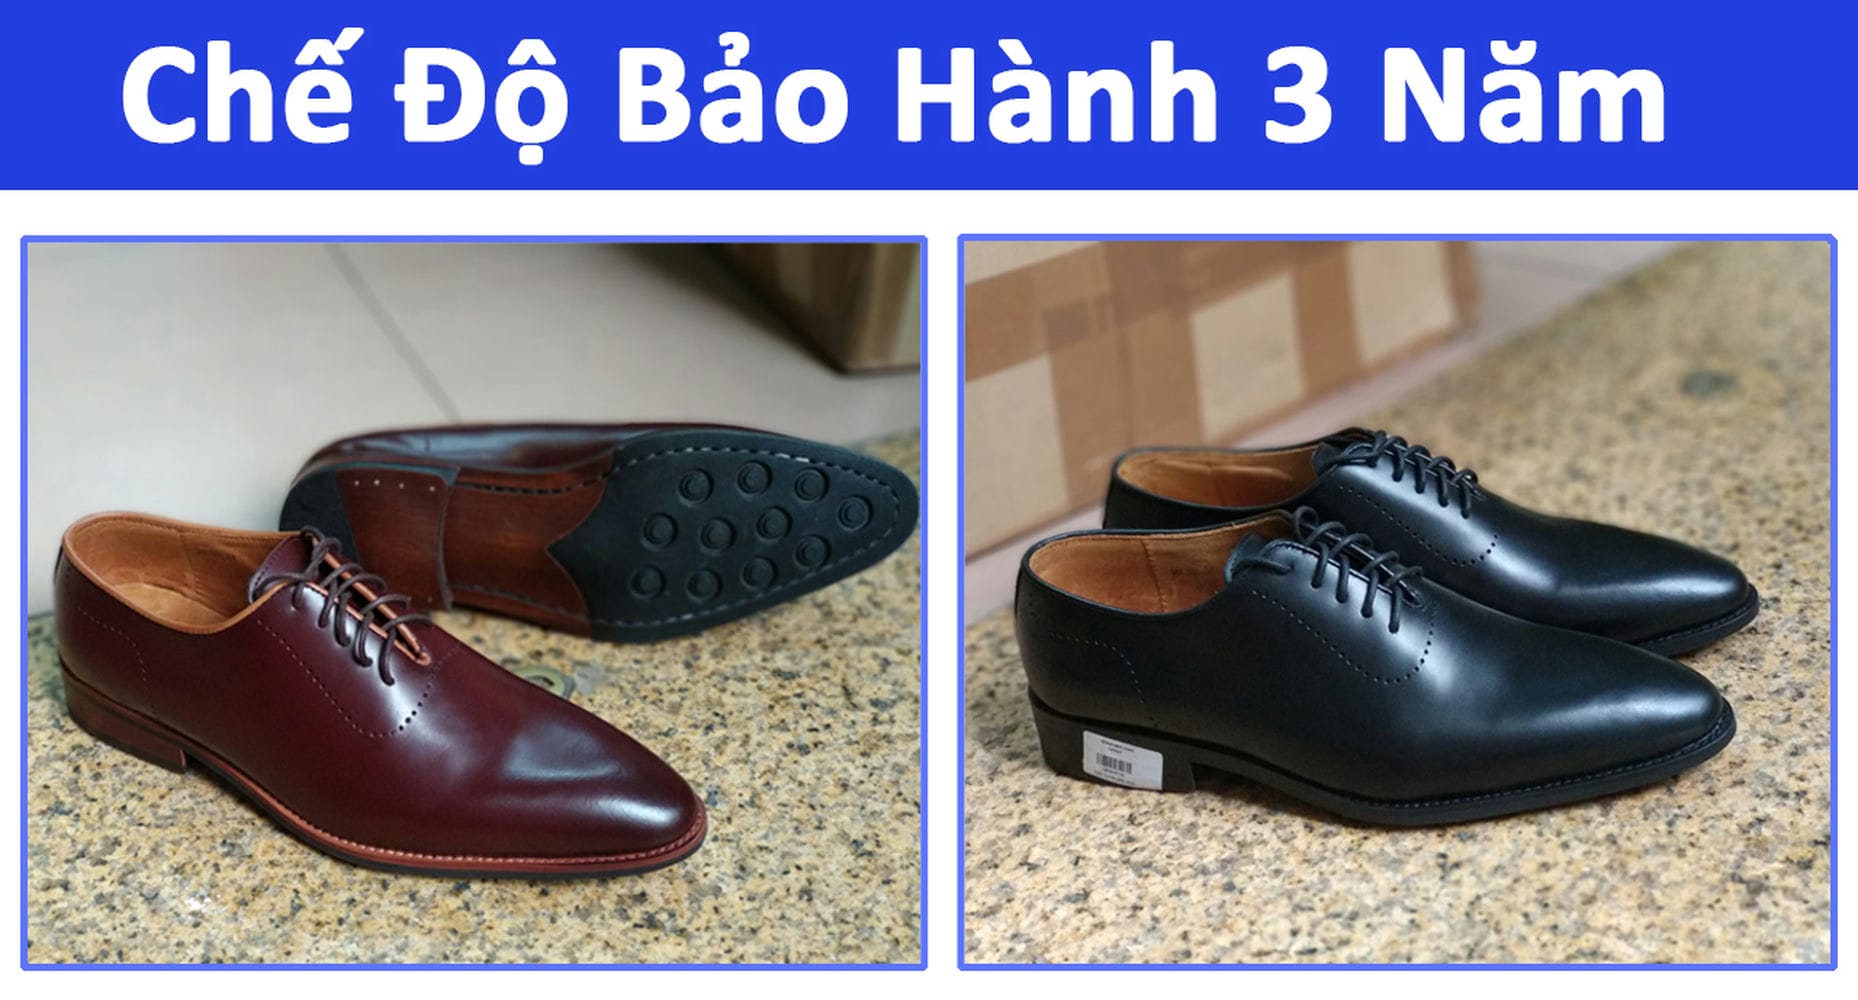 4 điều cần chú ý khi chọn giày da cho nam